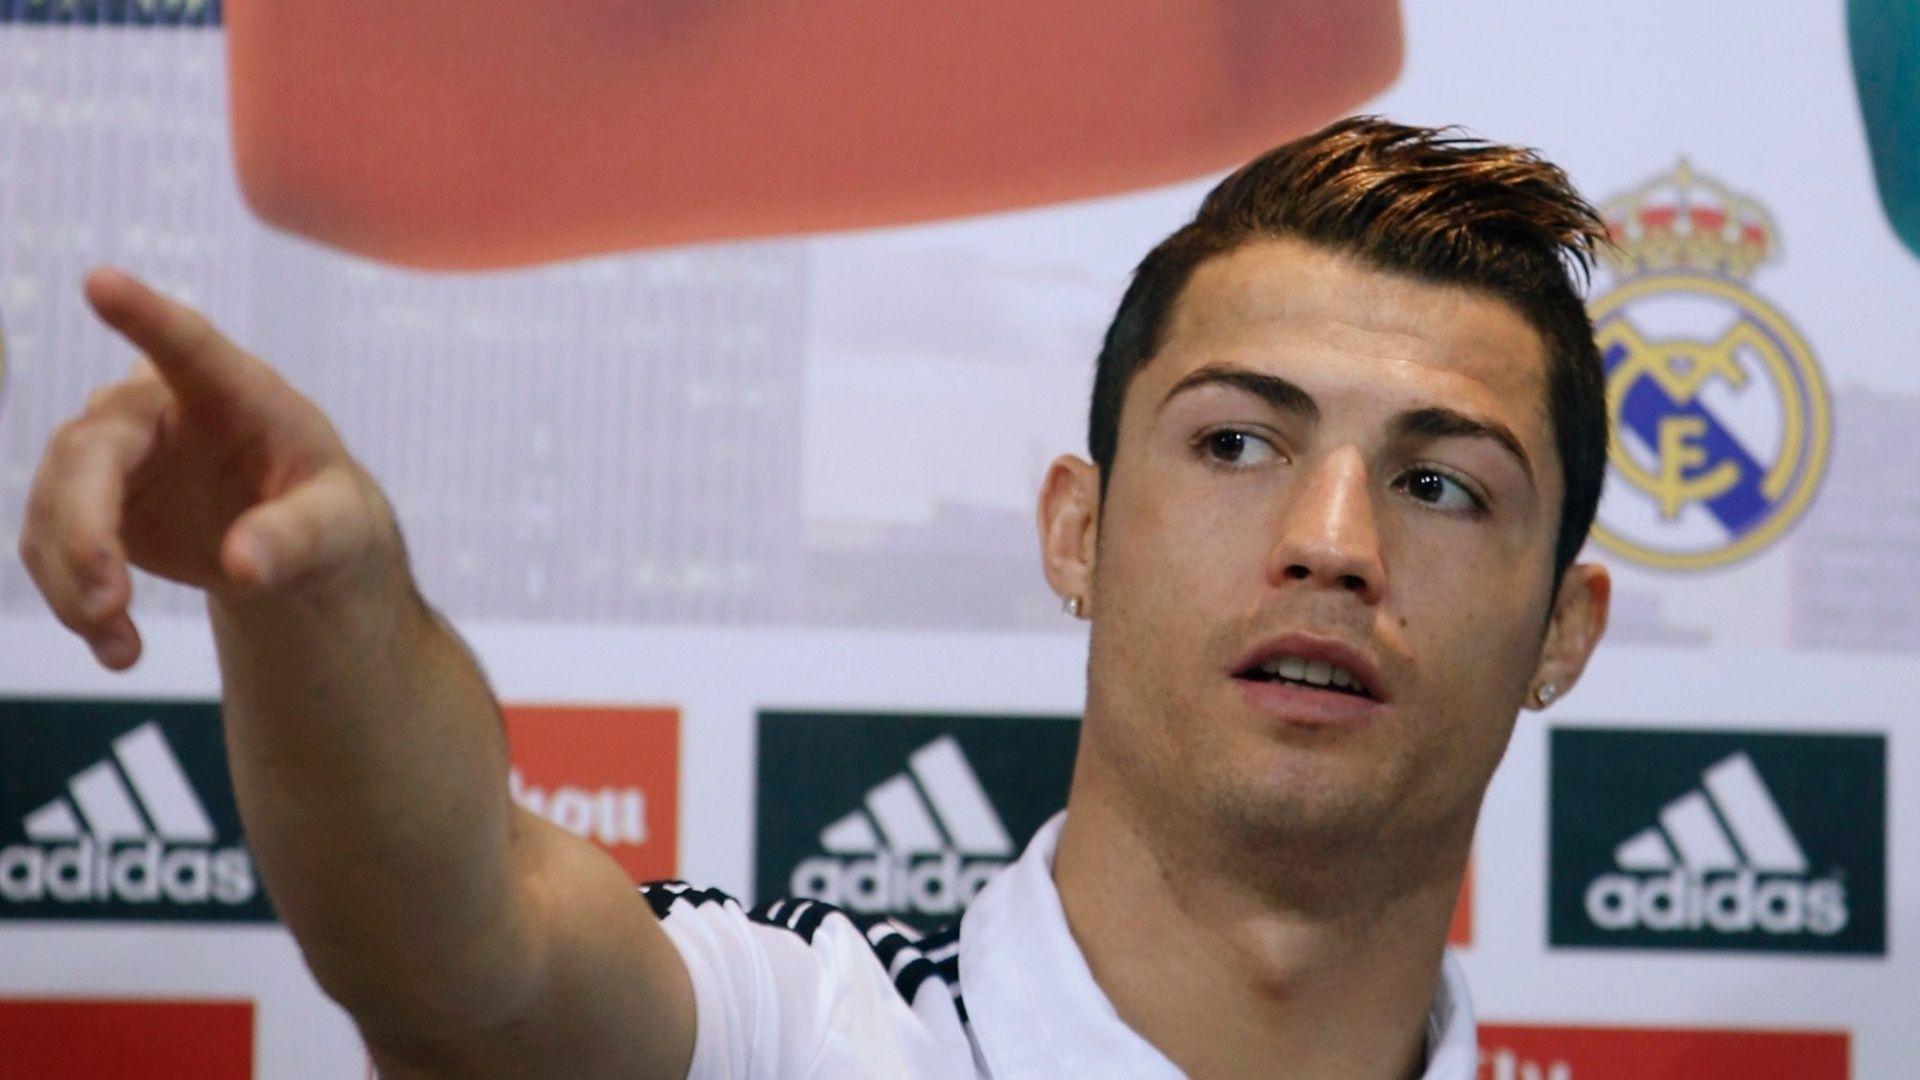 Cristiano Ronaldo New Hairstyles 2014 Sporteology